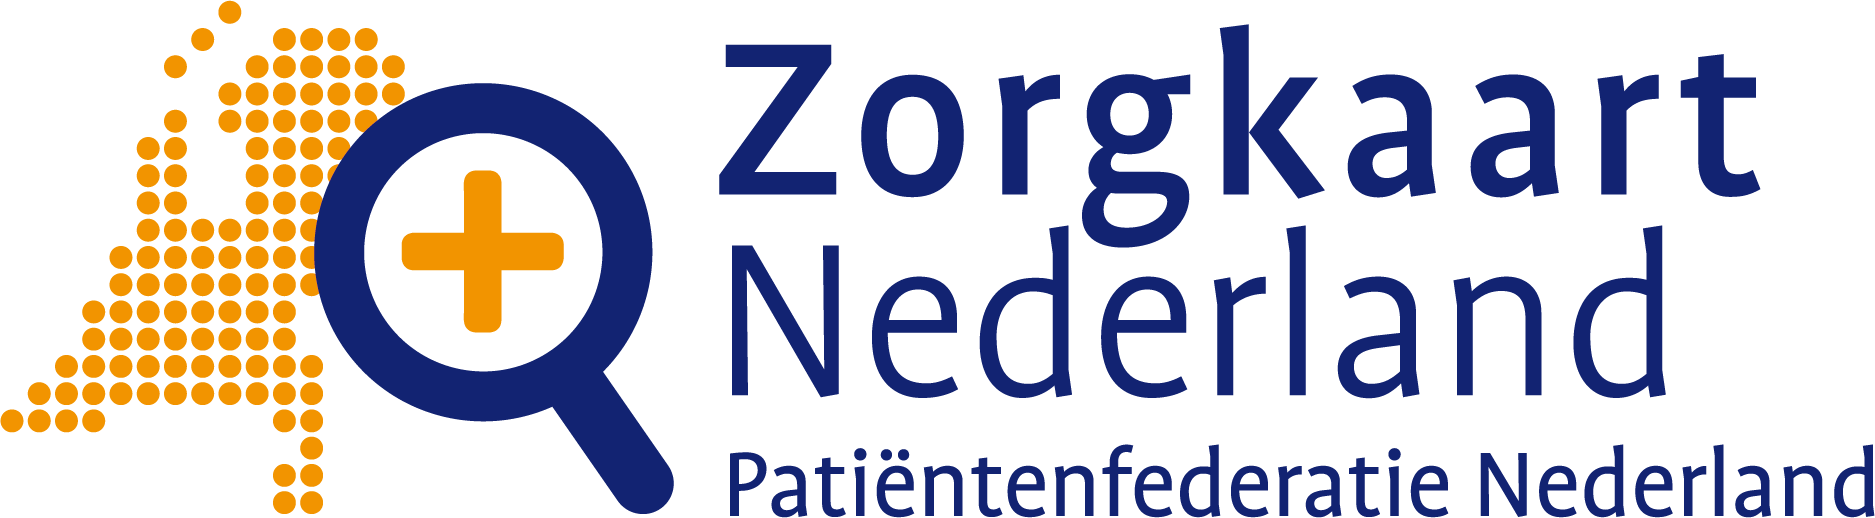 ZorgkaartNederland logo